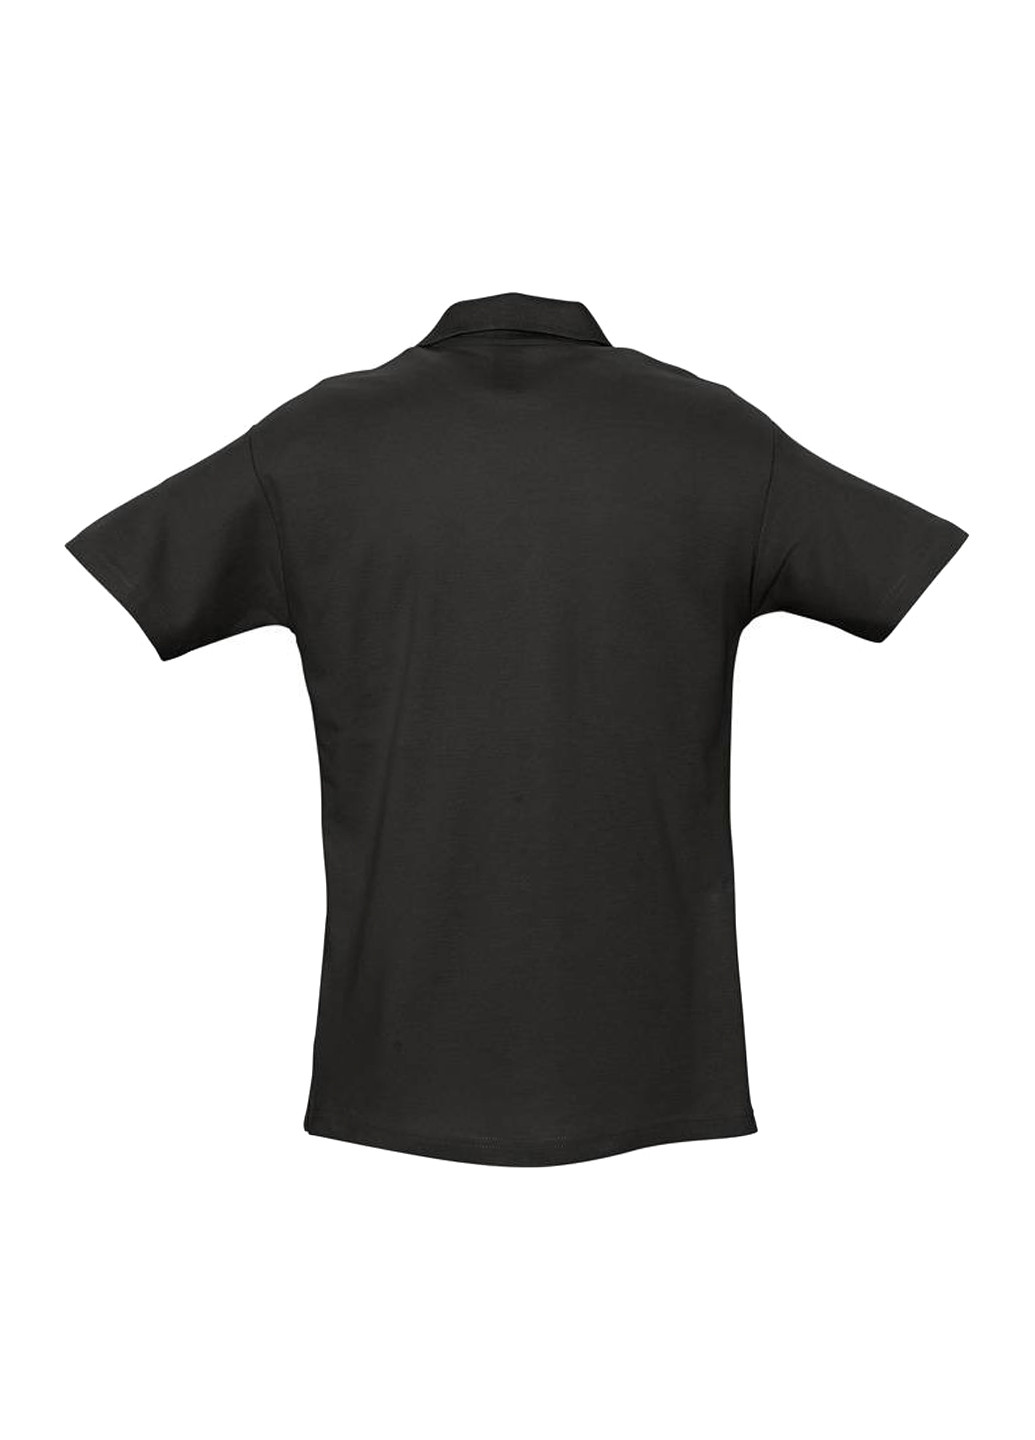 Черная футболка-поло для мужчин Sol's